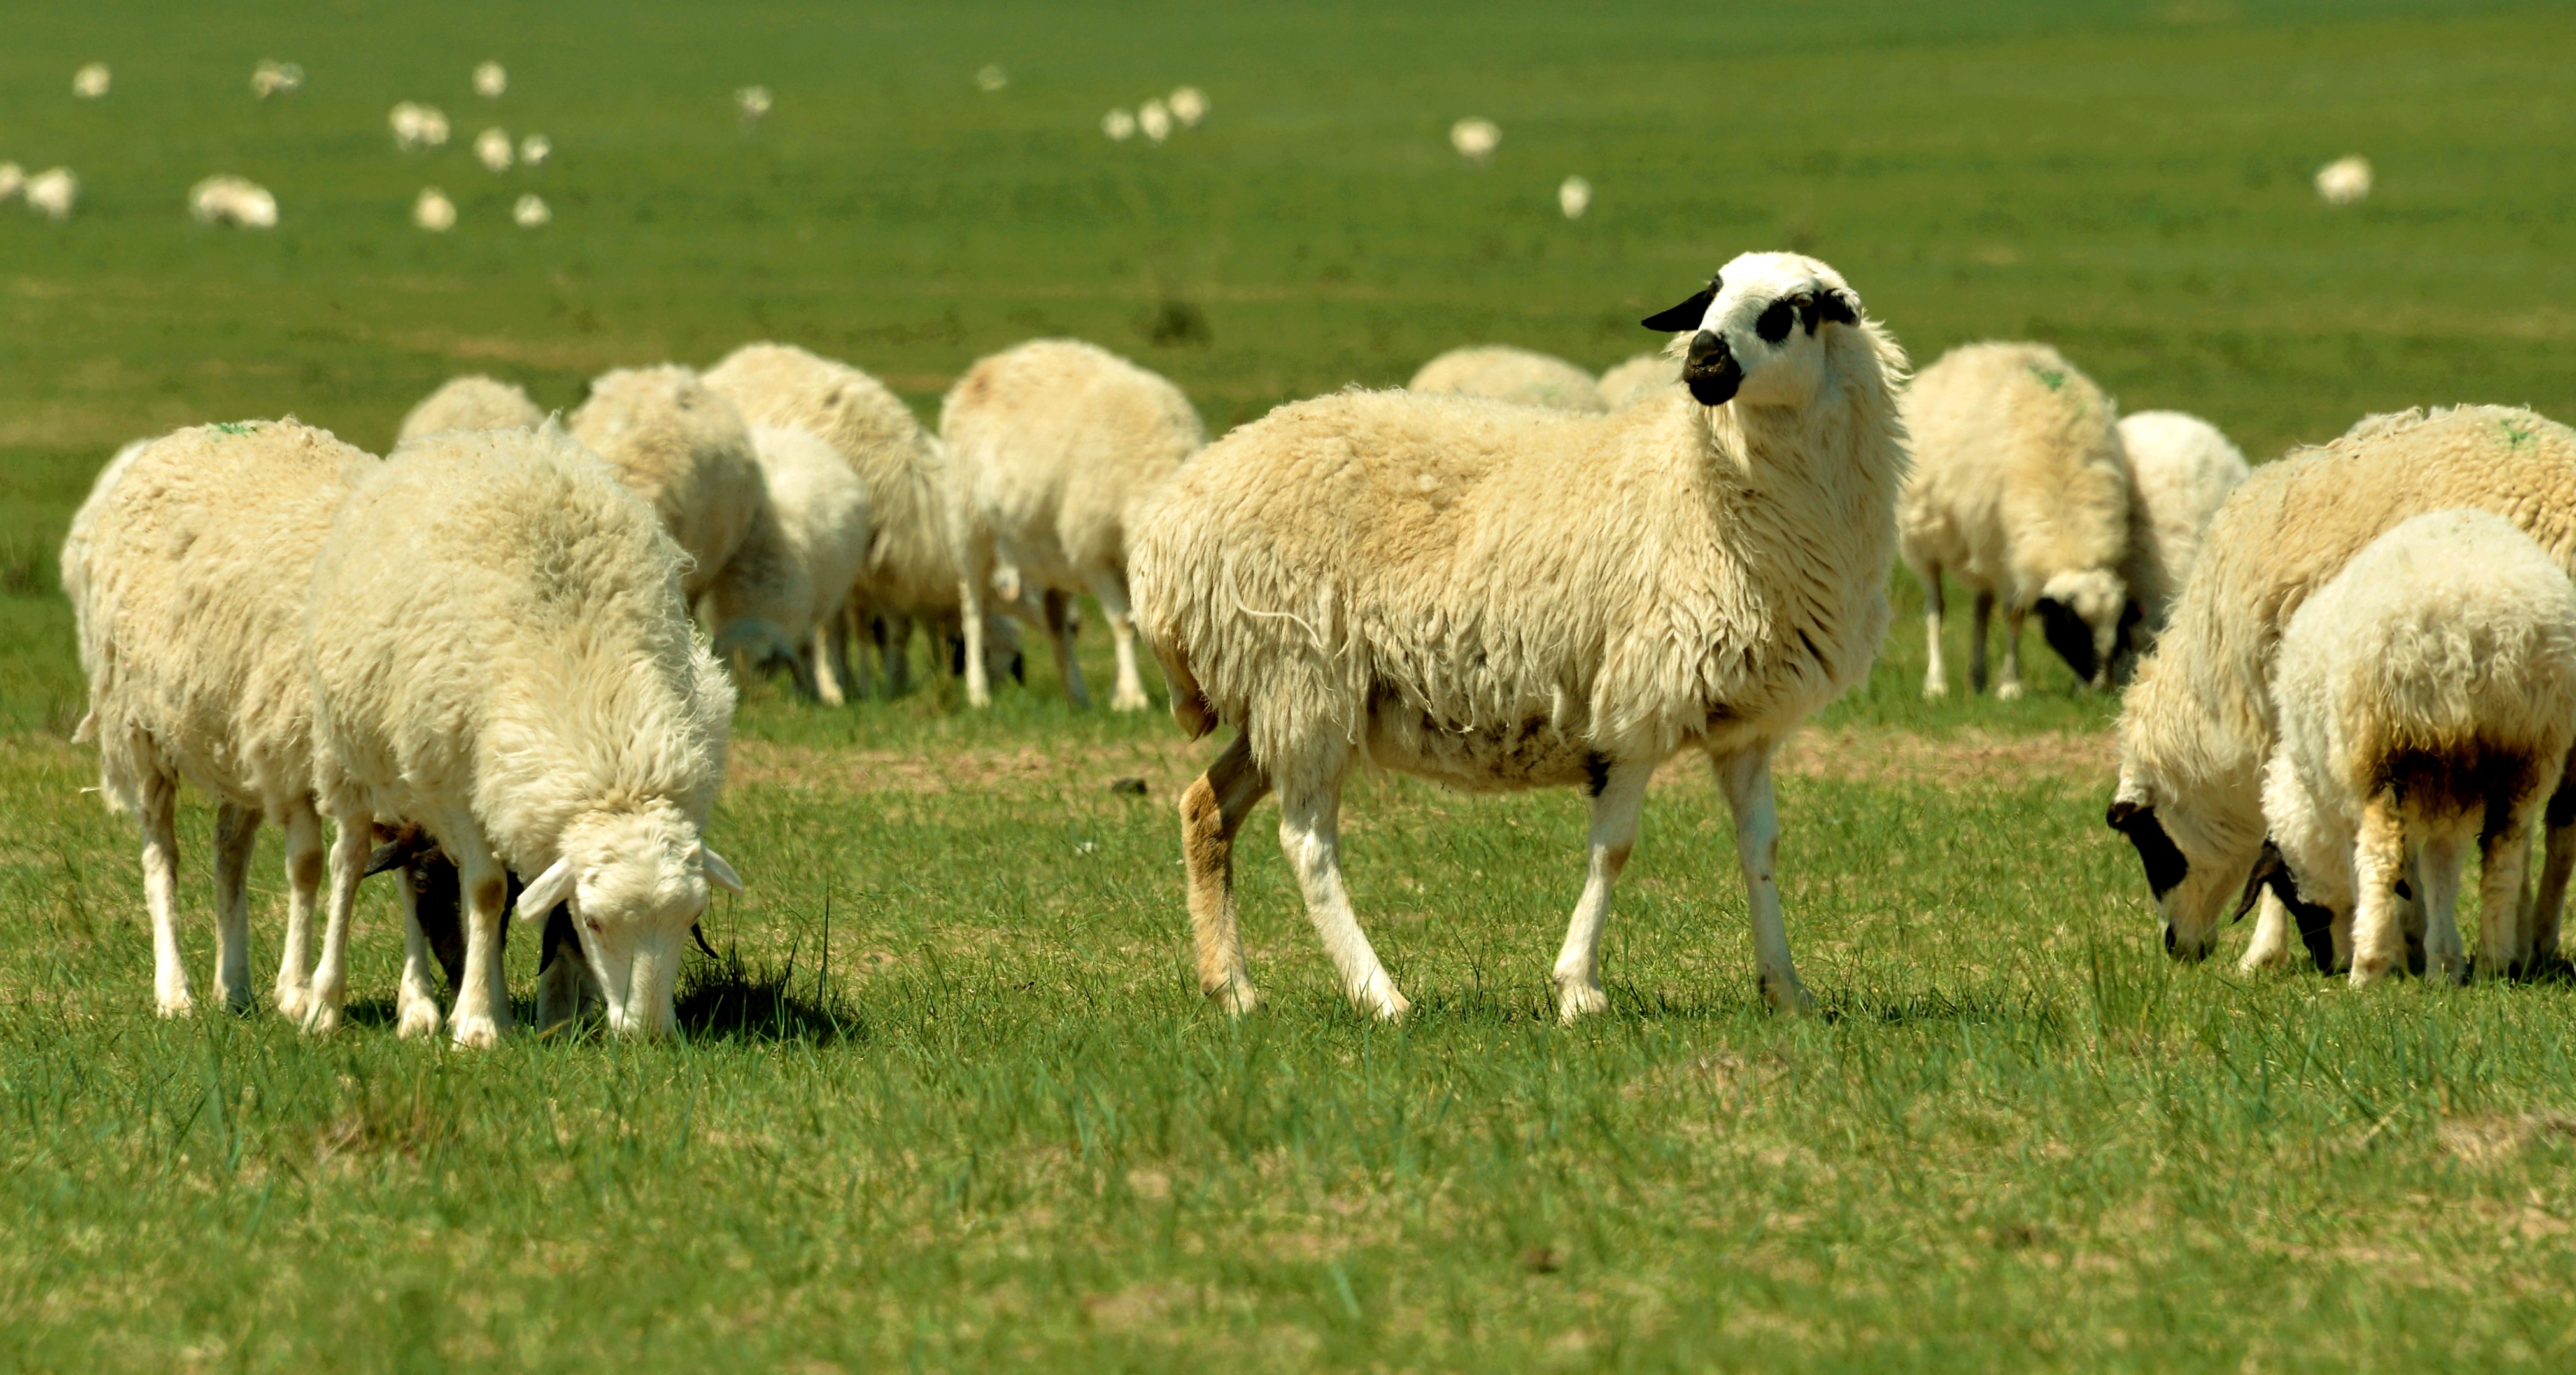 牧民告诉我们,这是白绒山羊,体积大,成年羊每只体重都在130斤以上